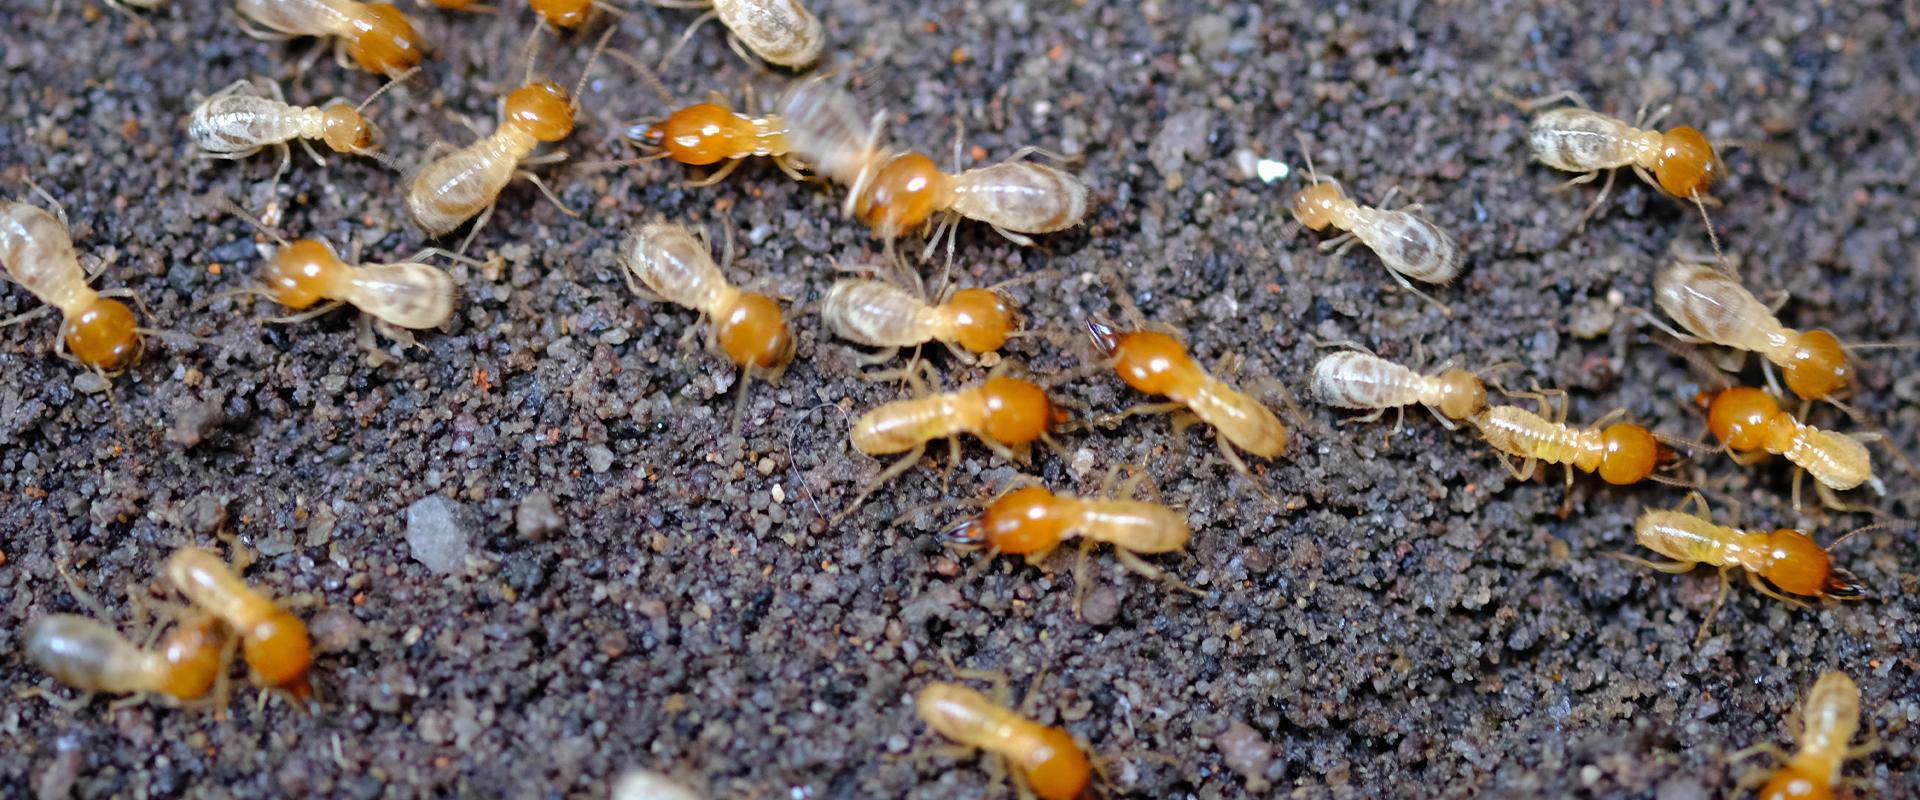 termites on gravel